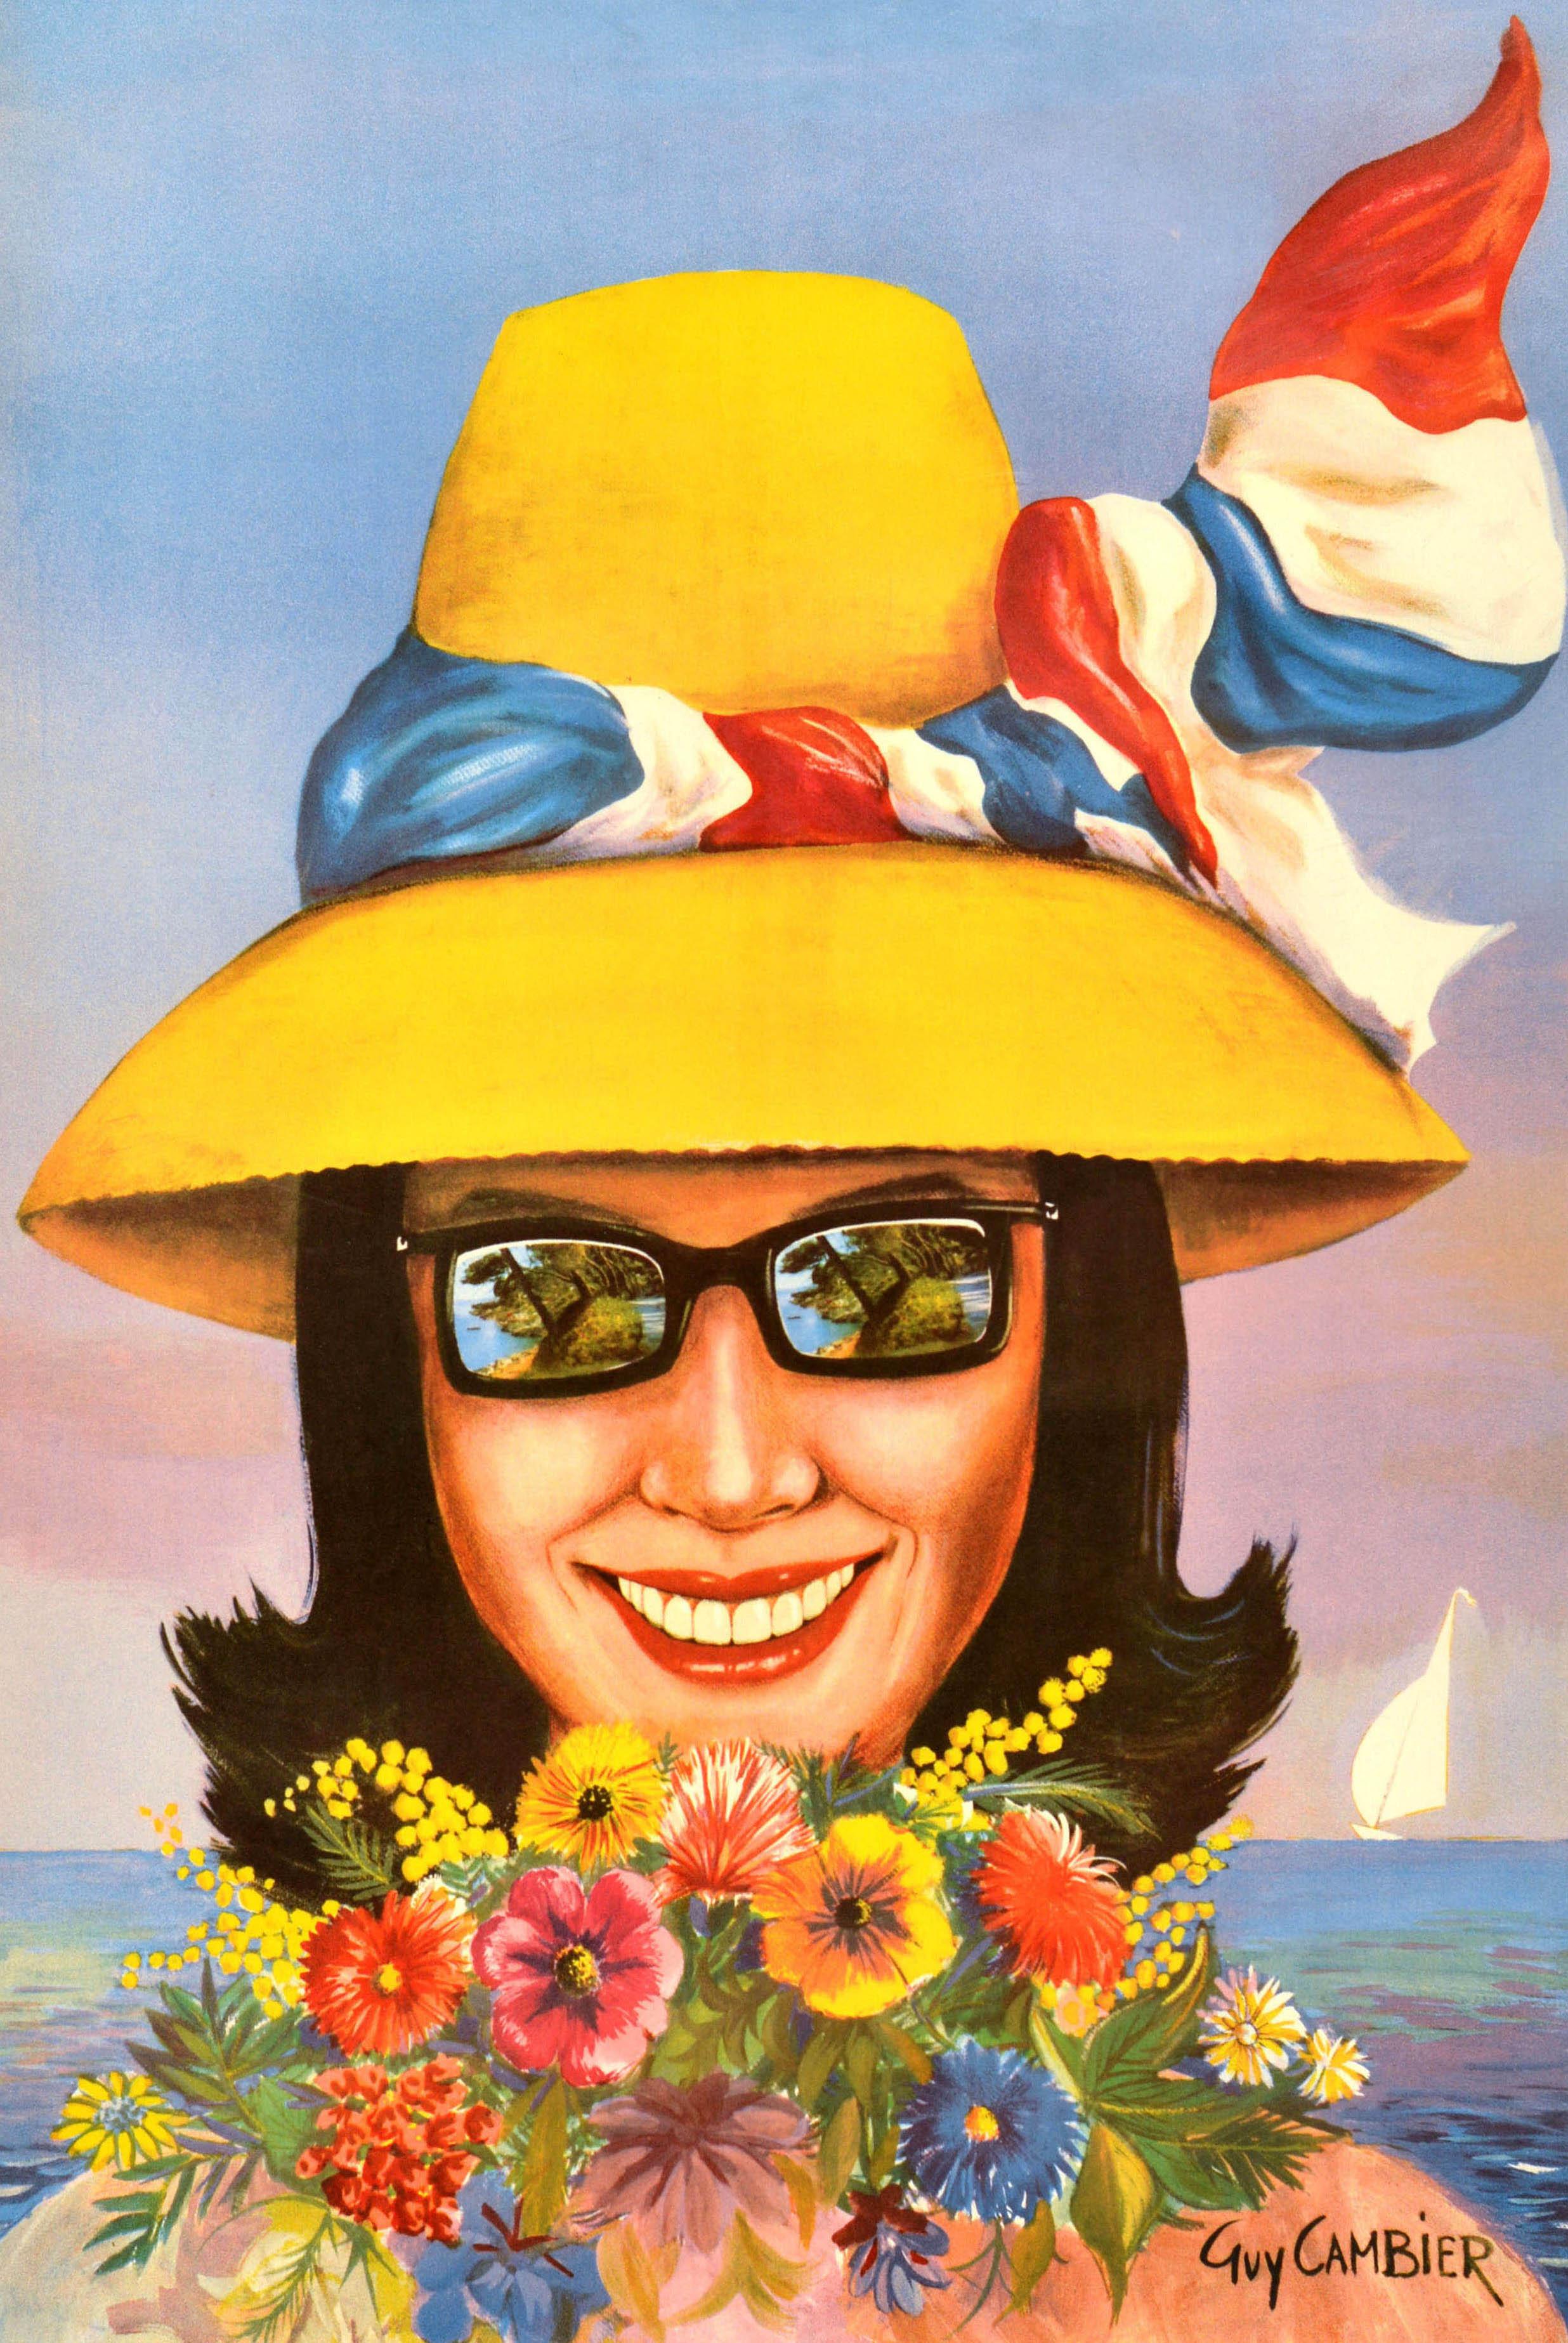 Original Vintage-Reiseplakat für Roquebrune Cap Martin Riviera Cote d'Azur Frankreich mit einer farbenfrohen Illustration einer lächelnden Dame mit einem Sommerhut, um den eine rot-weiß-blaue französische Flagge gebunden ist, und einer